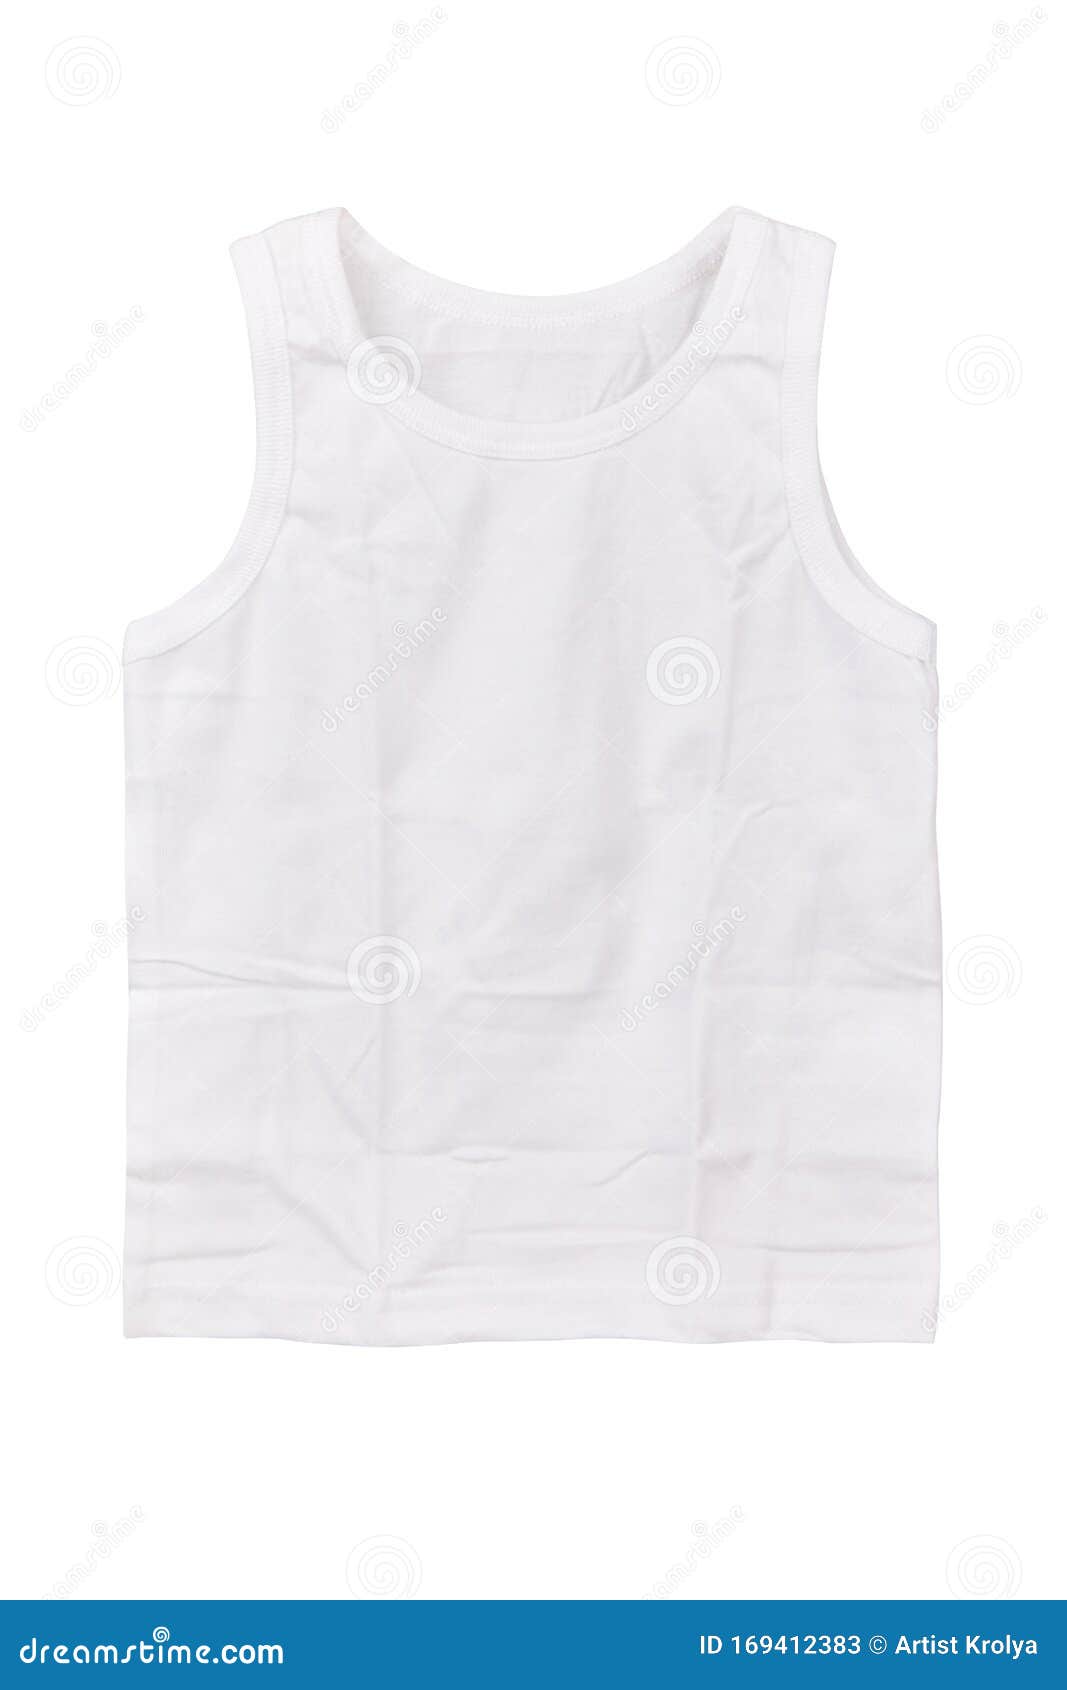 Kids White Cotton Sleeveless T-shirt Isolated Stock Image - Image of ...